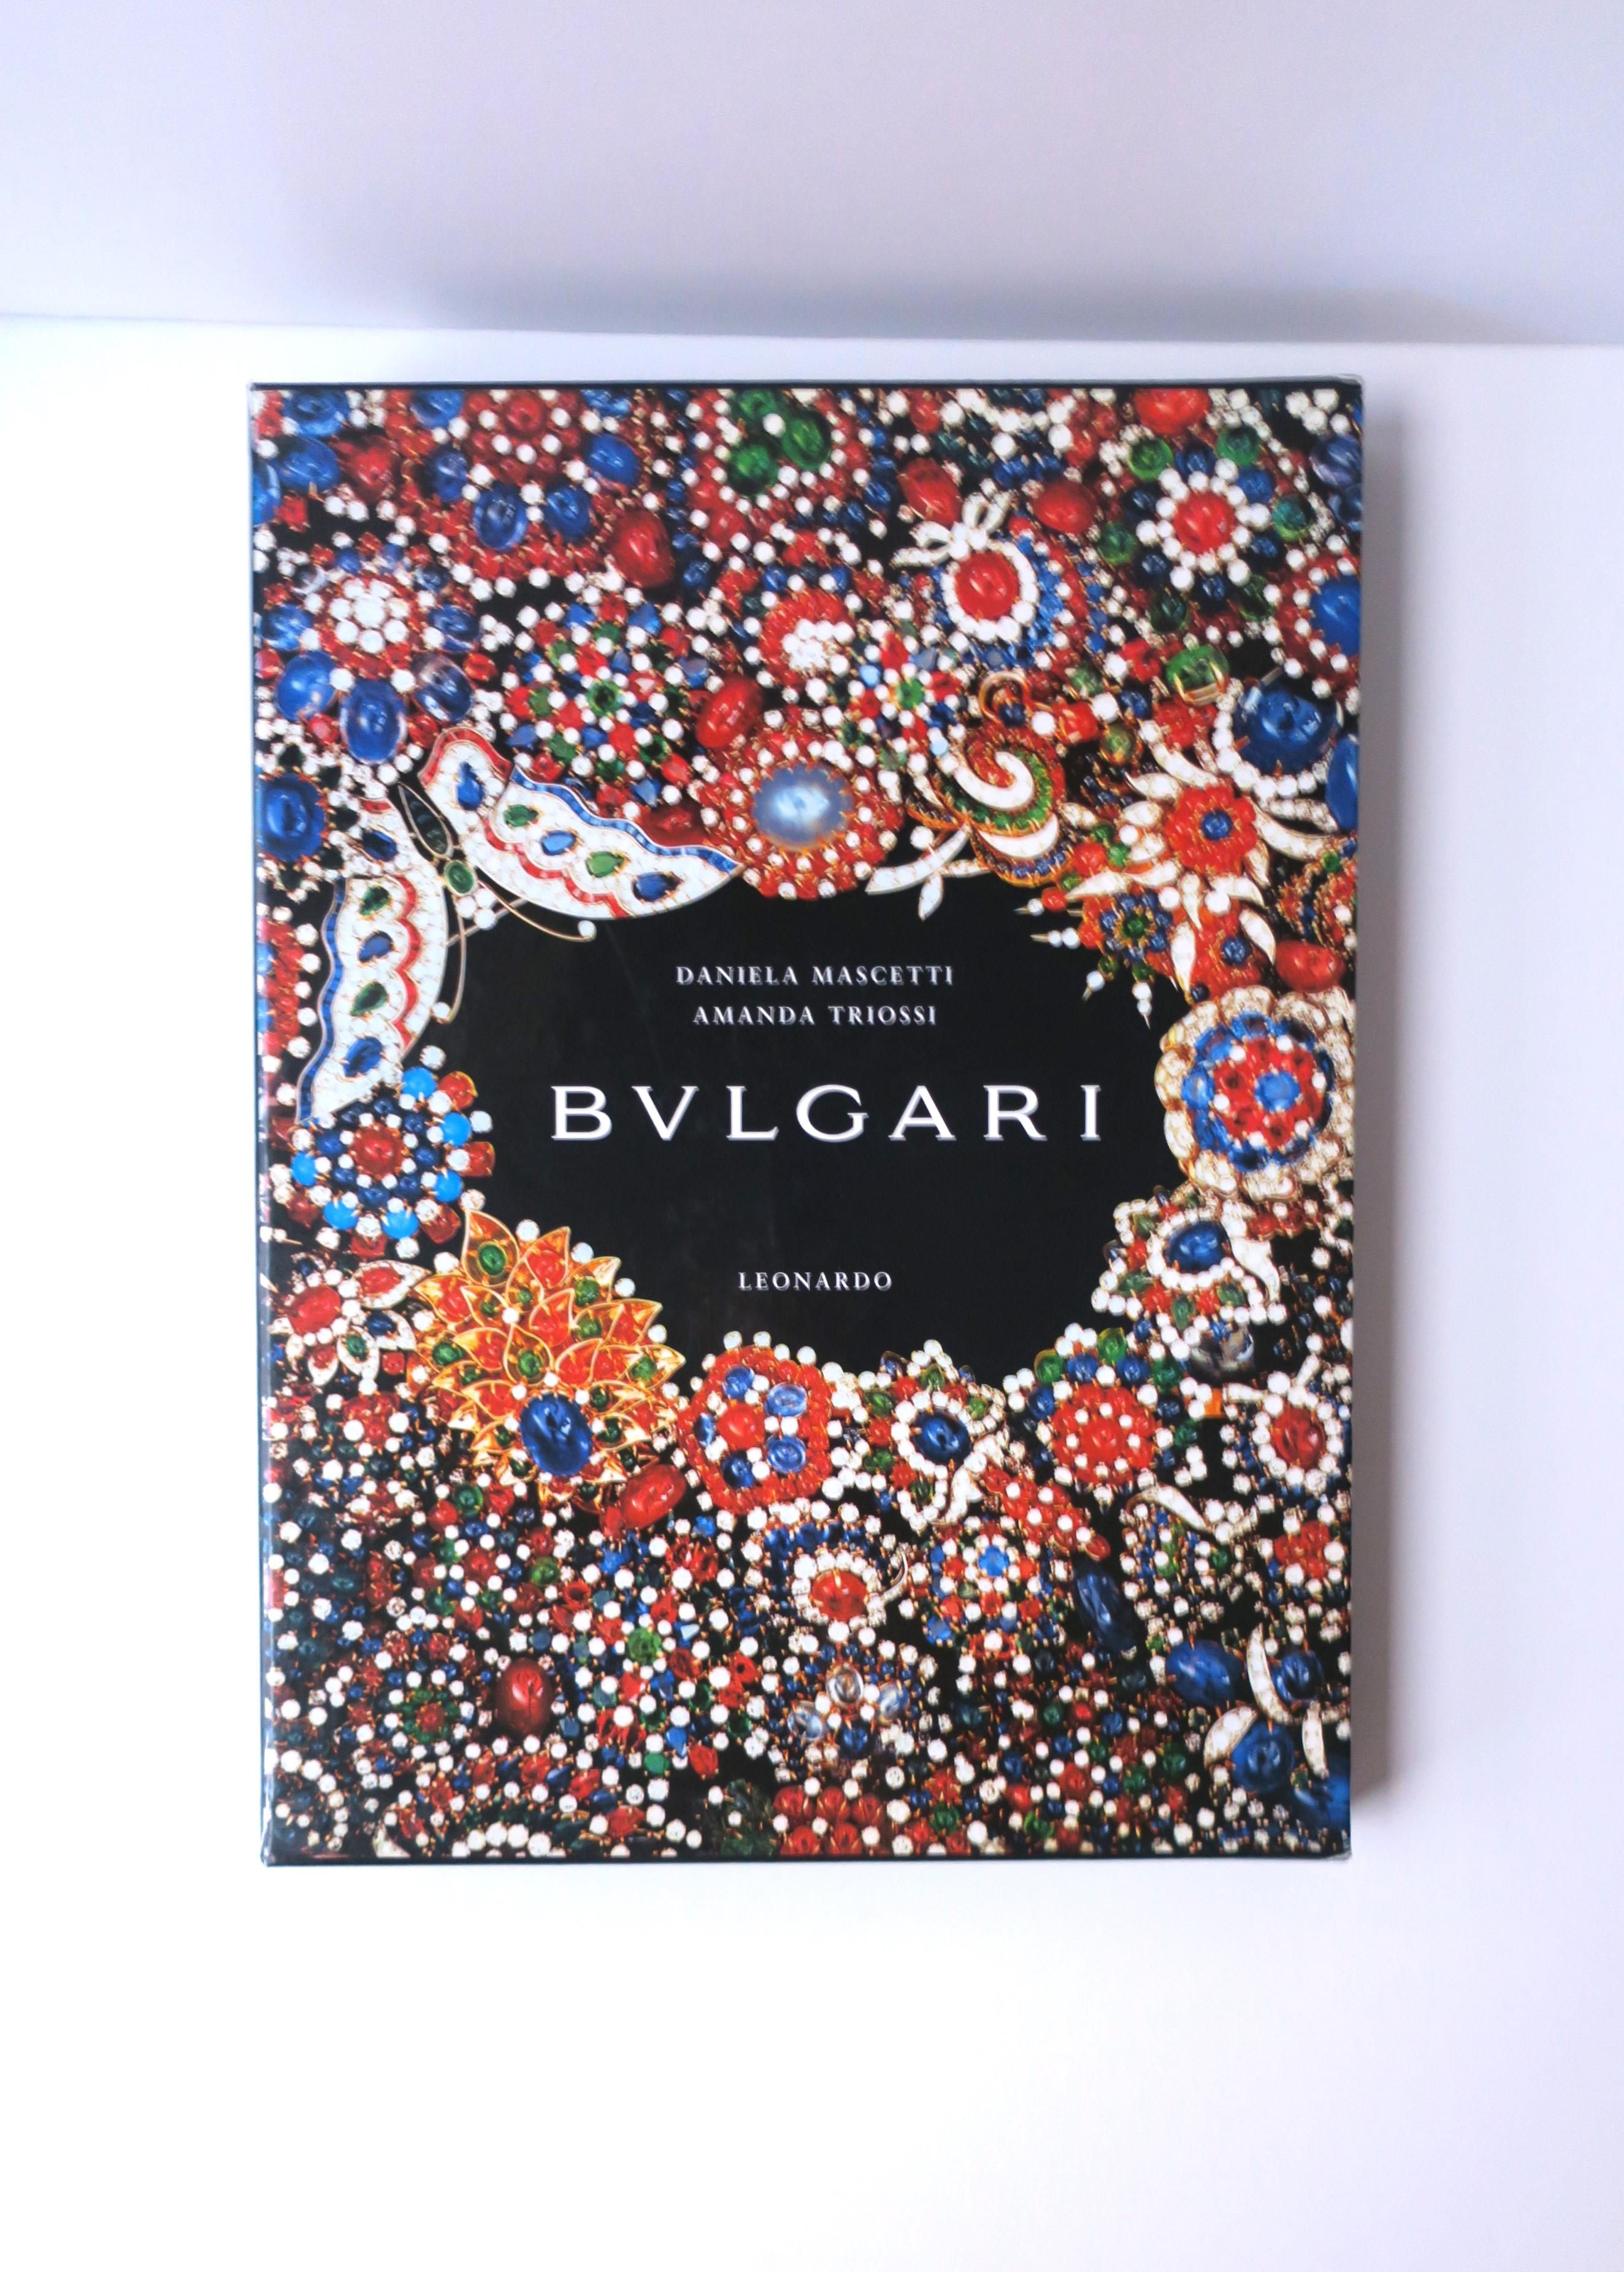 Voici une belle table basse (ou un livre de bibliothèque pour un foyer) sur l'histoire de l'emblématique joaillier de luxe italien Bvlgari (ou Bulgari), vers les années 1990, en Italie. Le livre couvre l'histoire de Bulgari dans la création de